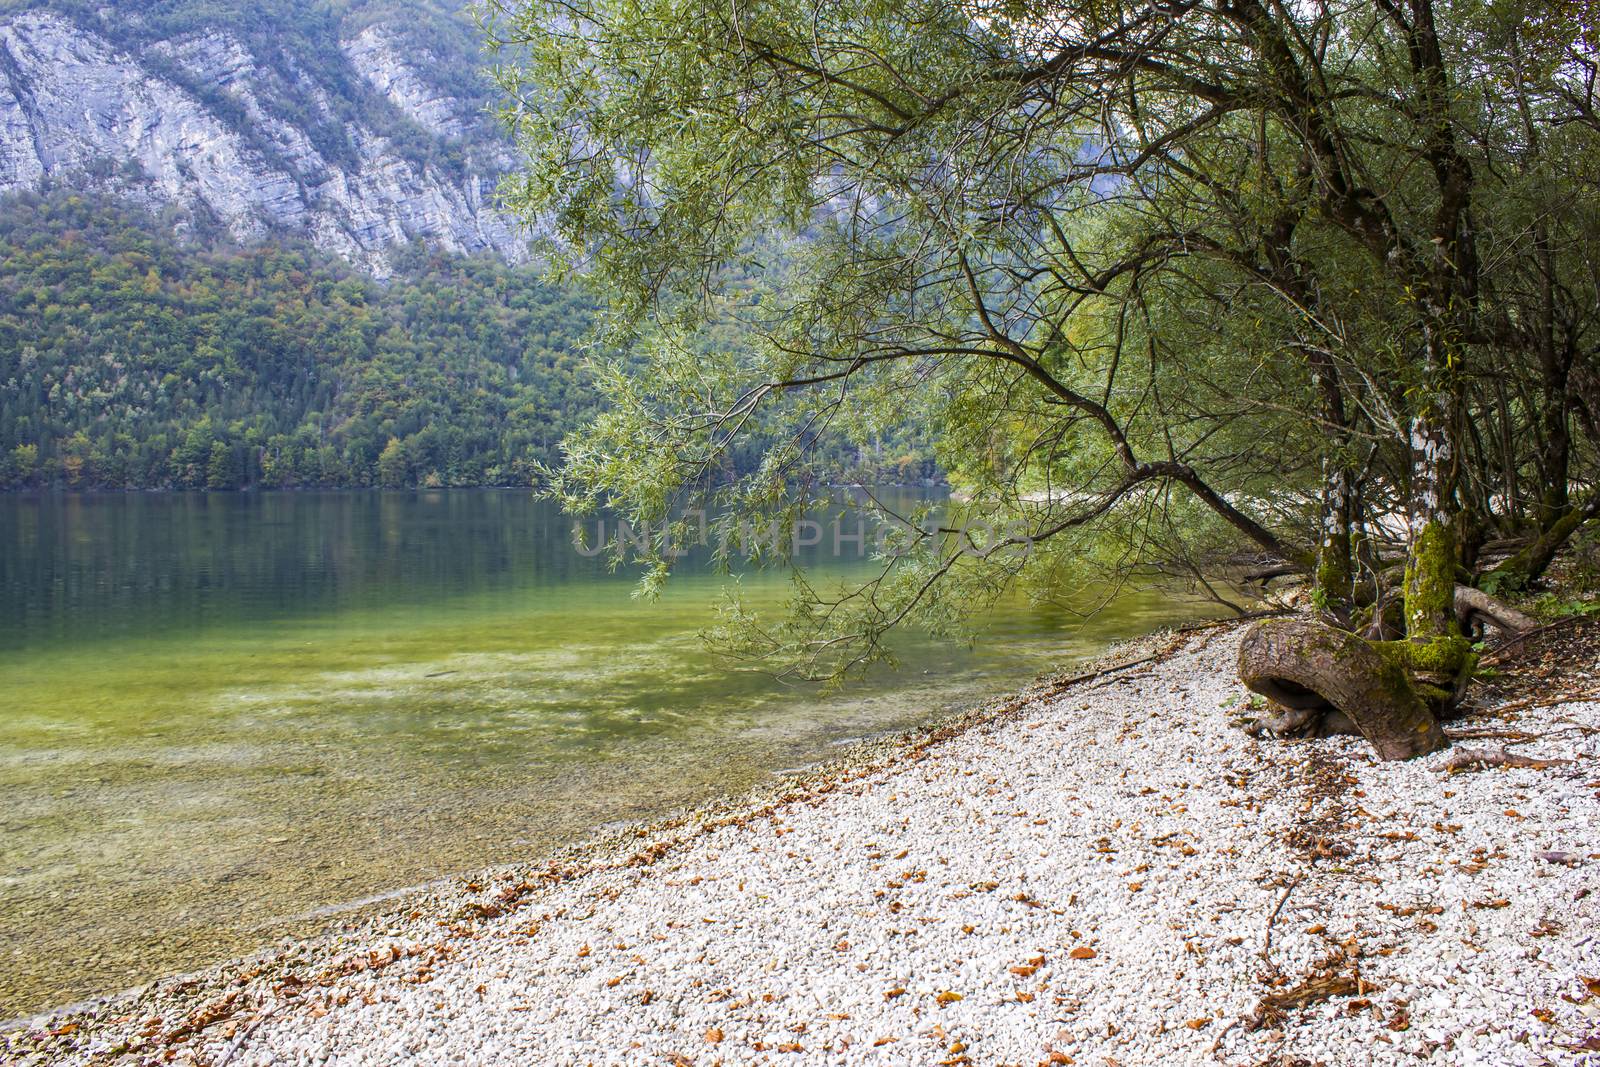 Bohinj lake, Slovenia by miradrozdowski